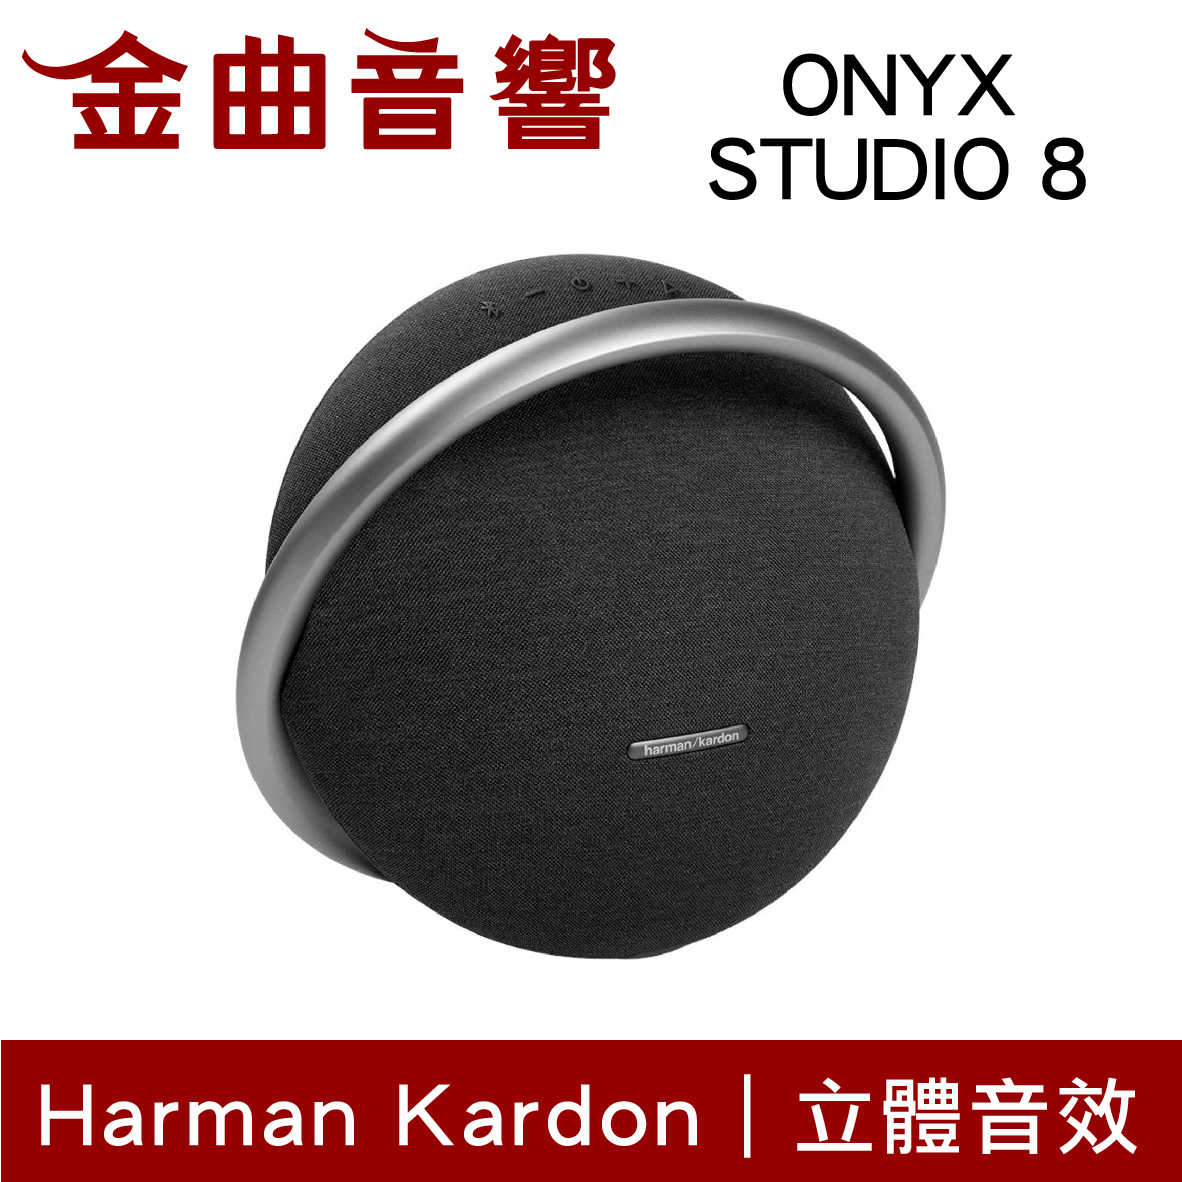 Harman Kardon ONYX STUDIO 8 黑色 無線串流 免提通話 可攜式 藍牙喇叭 | 金曲音響